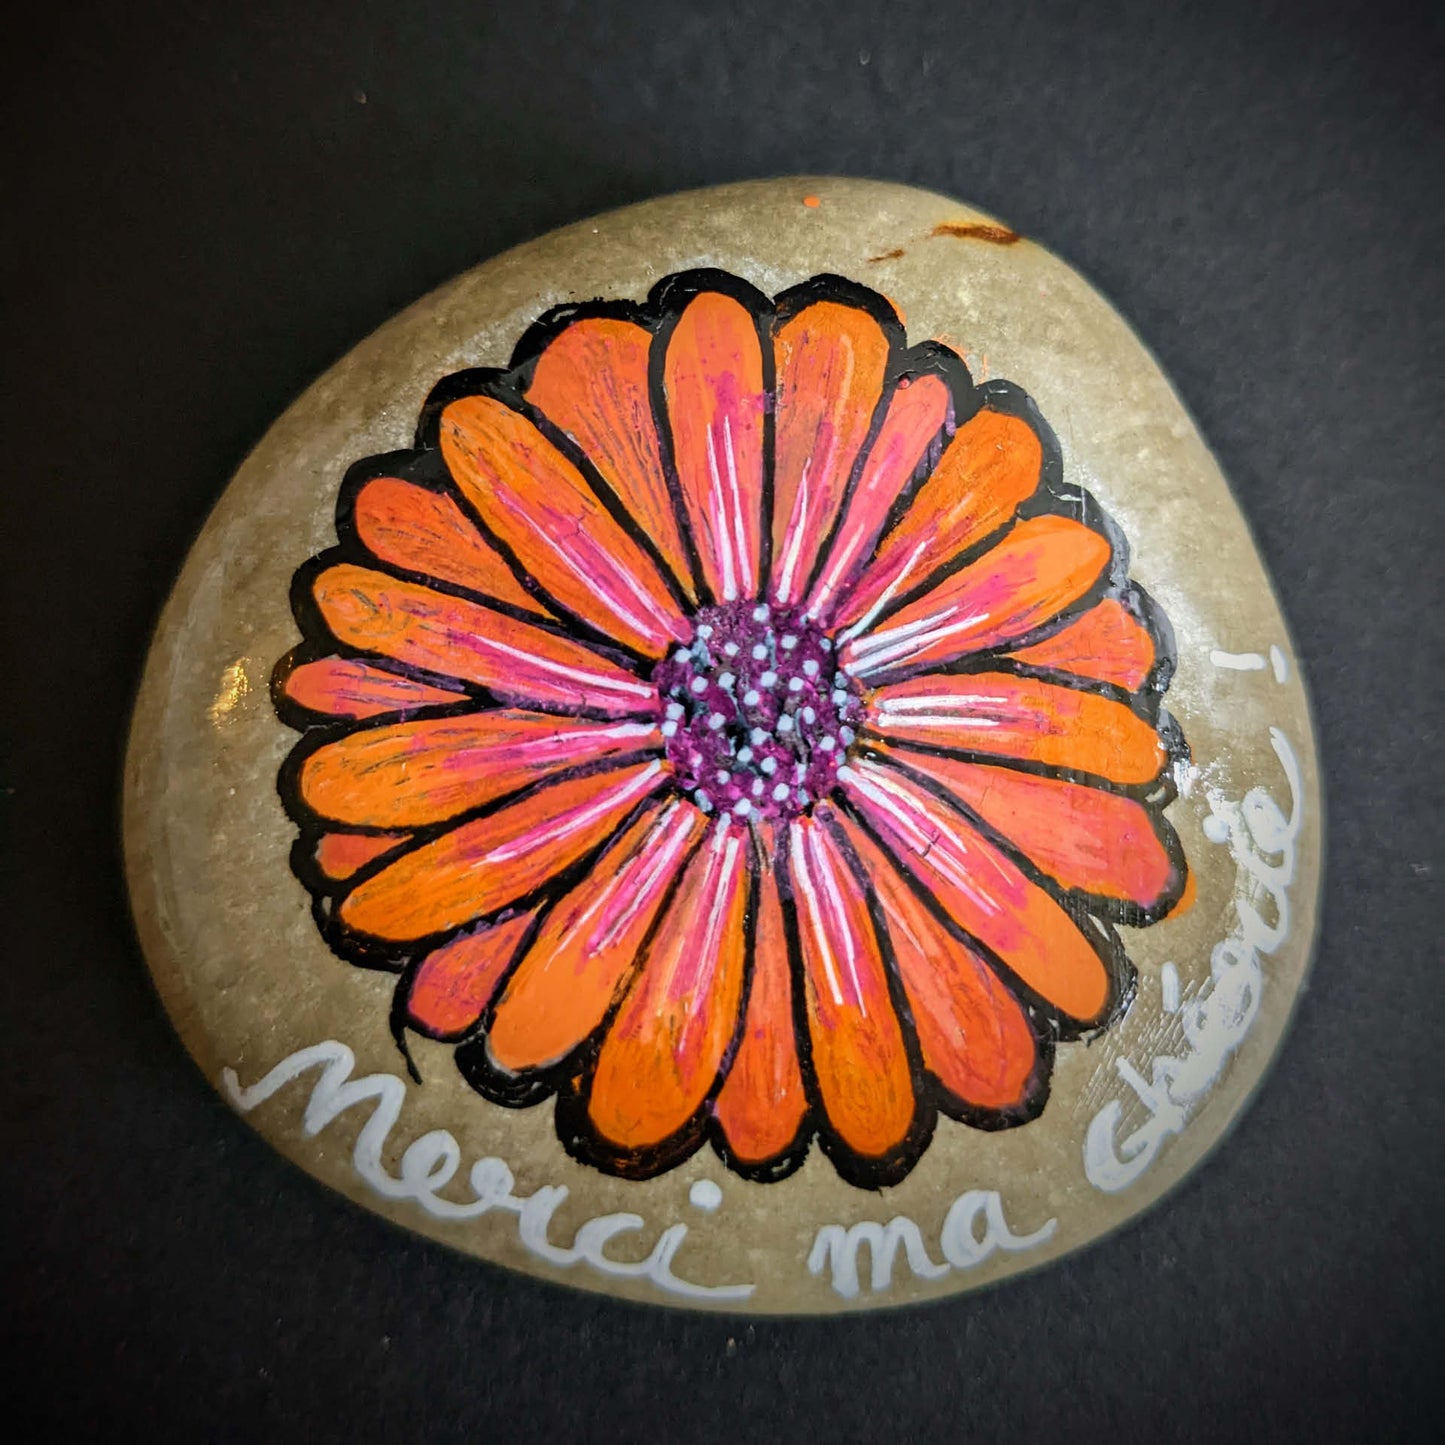 Galet naturel peint avec une fleur orange style marguerite. On peut lire sous la fleur "Merci ma chérie"